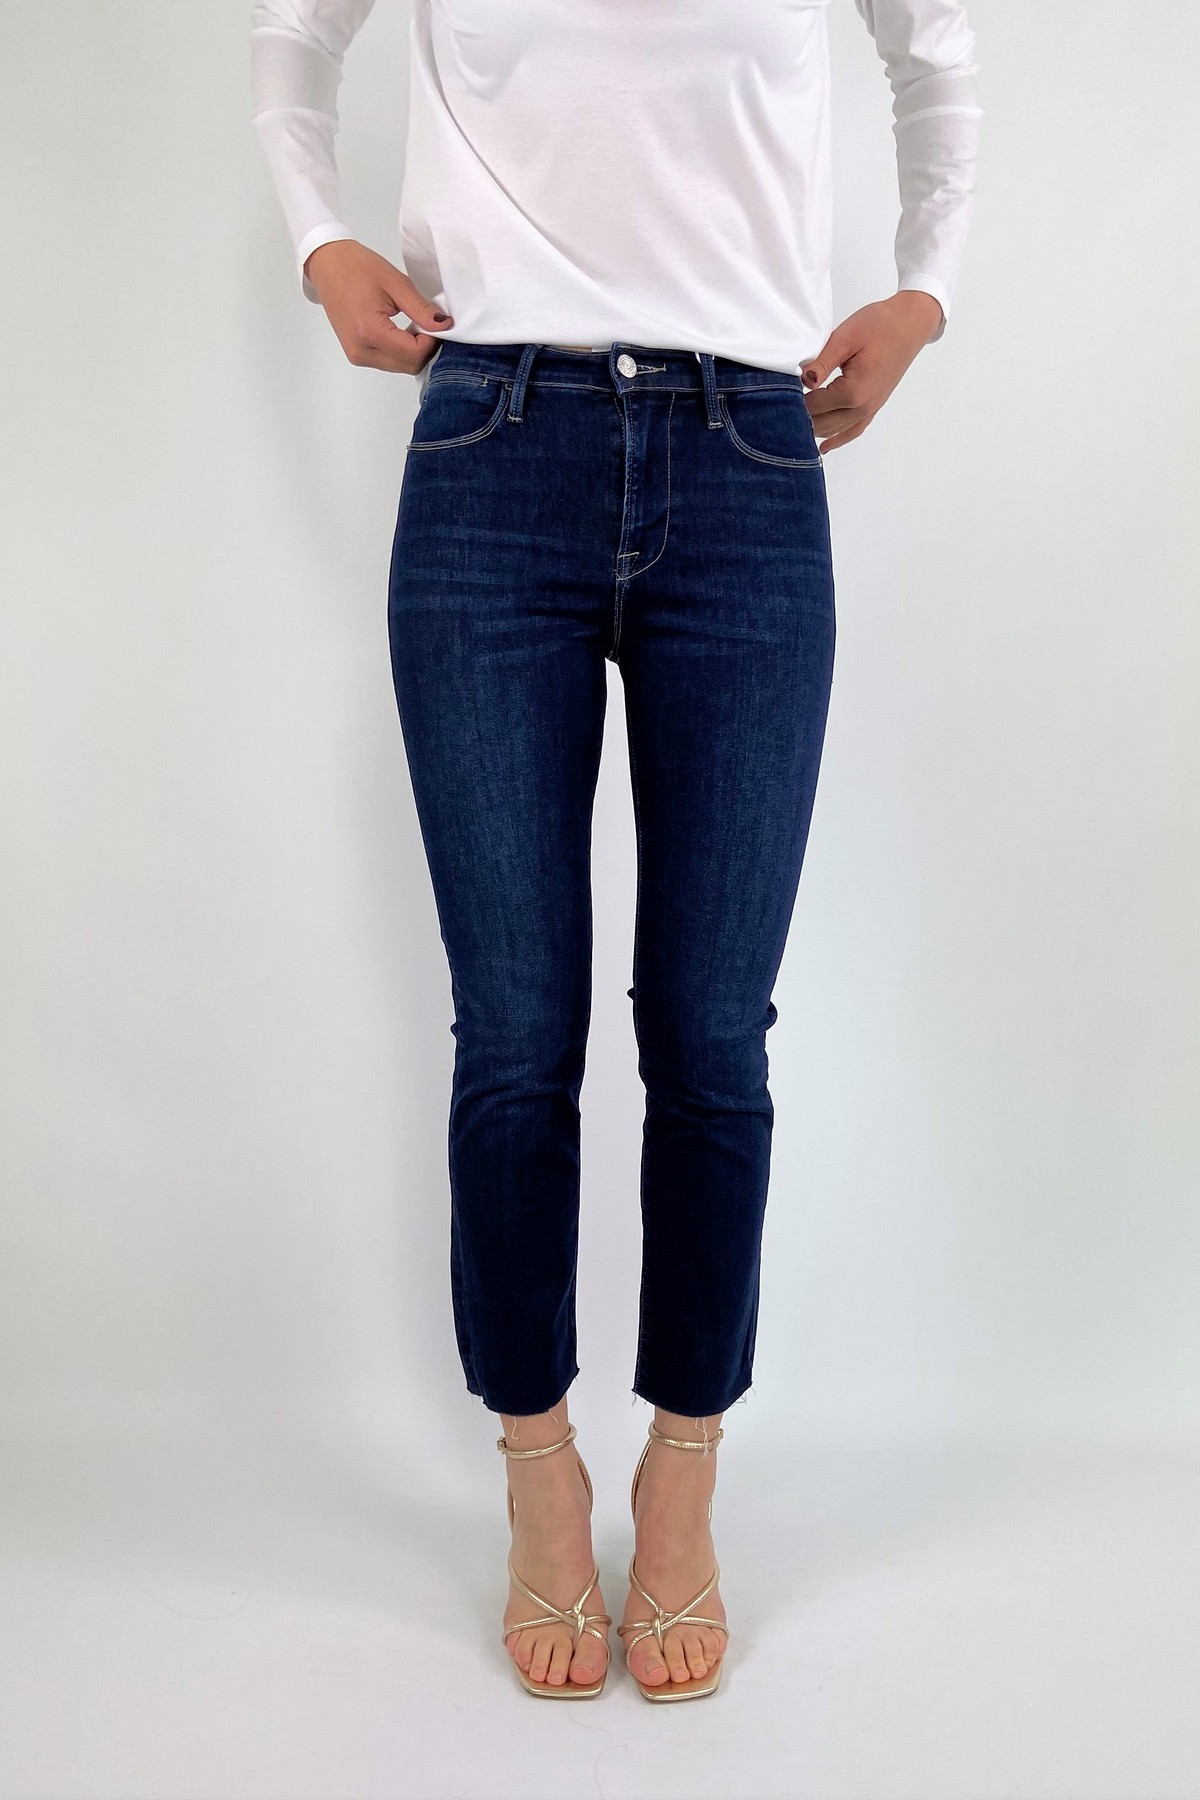 jeans straight uitgerafeld in de kleur mediumblue van het merk Frame